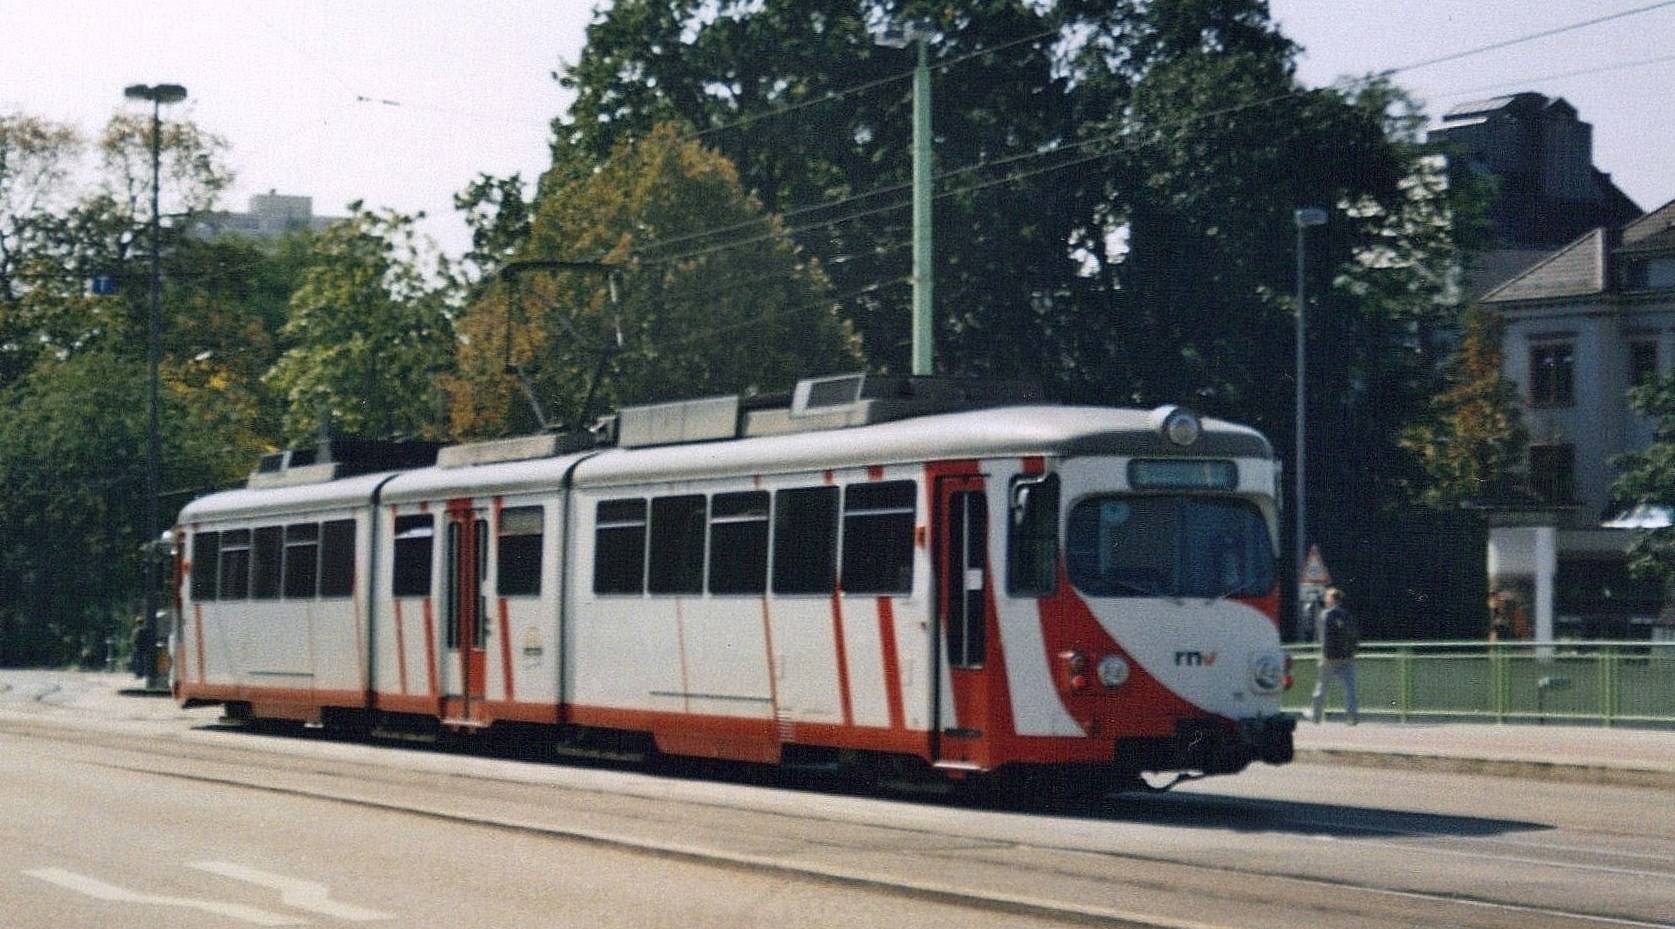 Duewag Tram in Oberrheinsiche Eisenbahn Gesellschaft Livery.